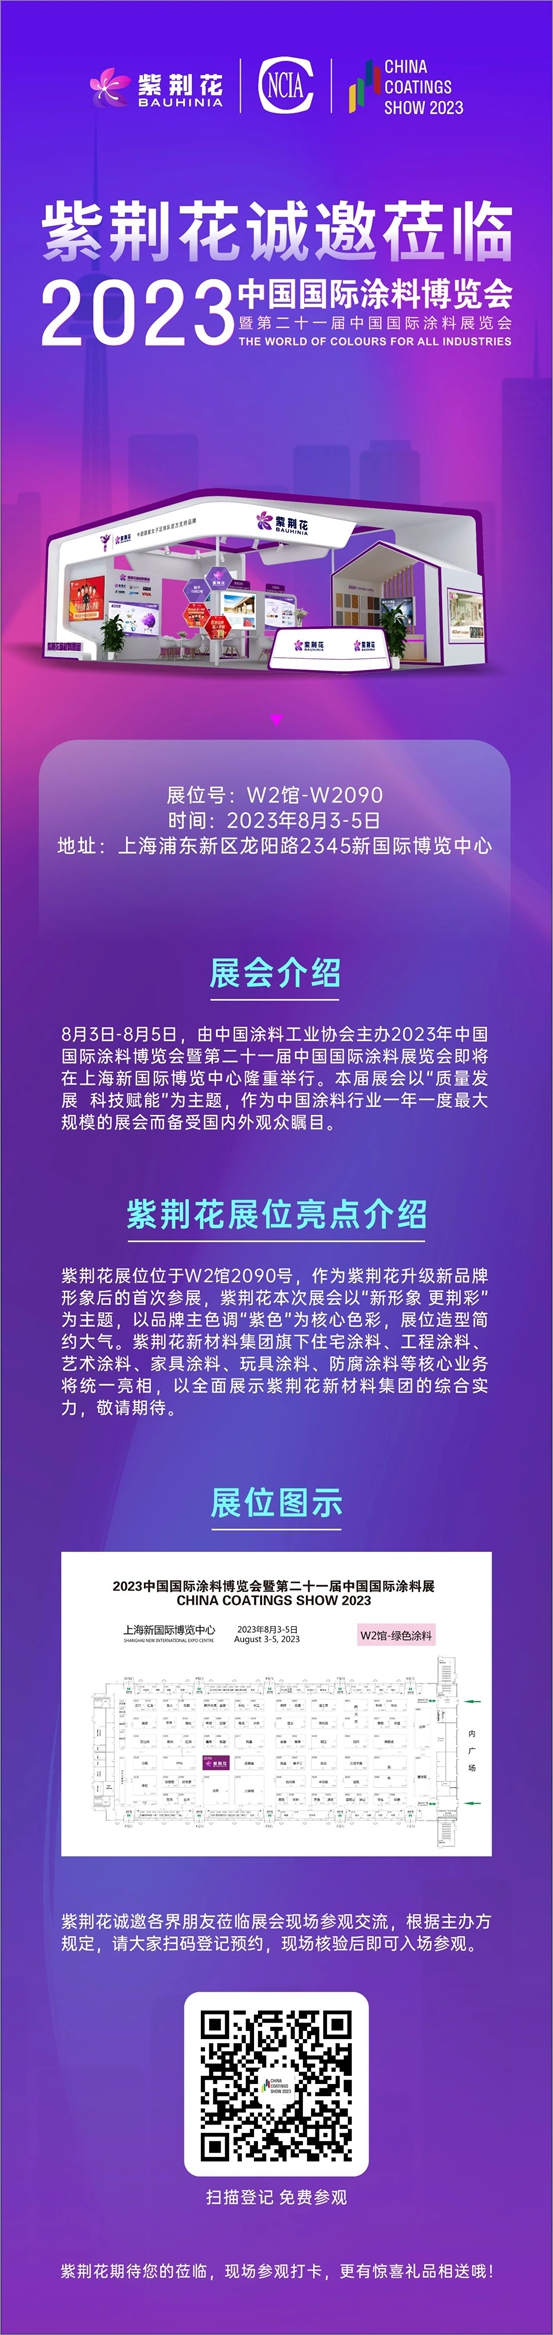 紫荆花诚挚邀请您莅临2023年中国国际涂料博览会